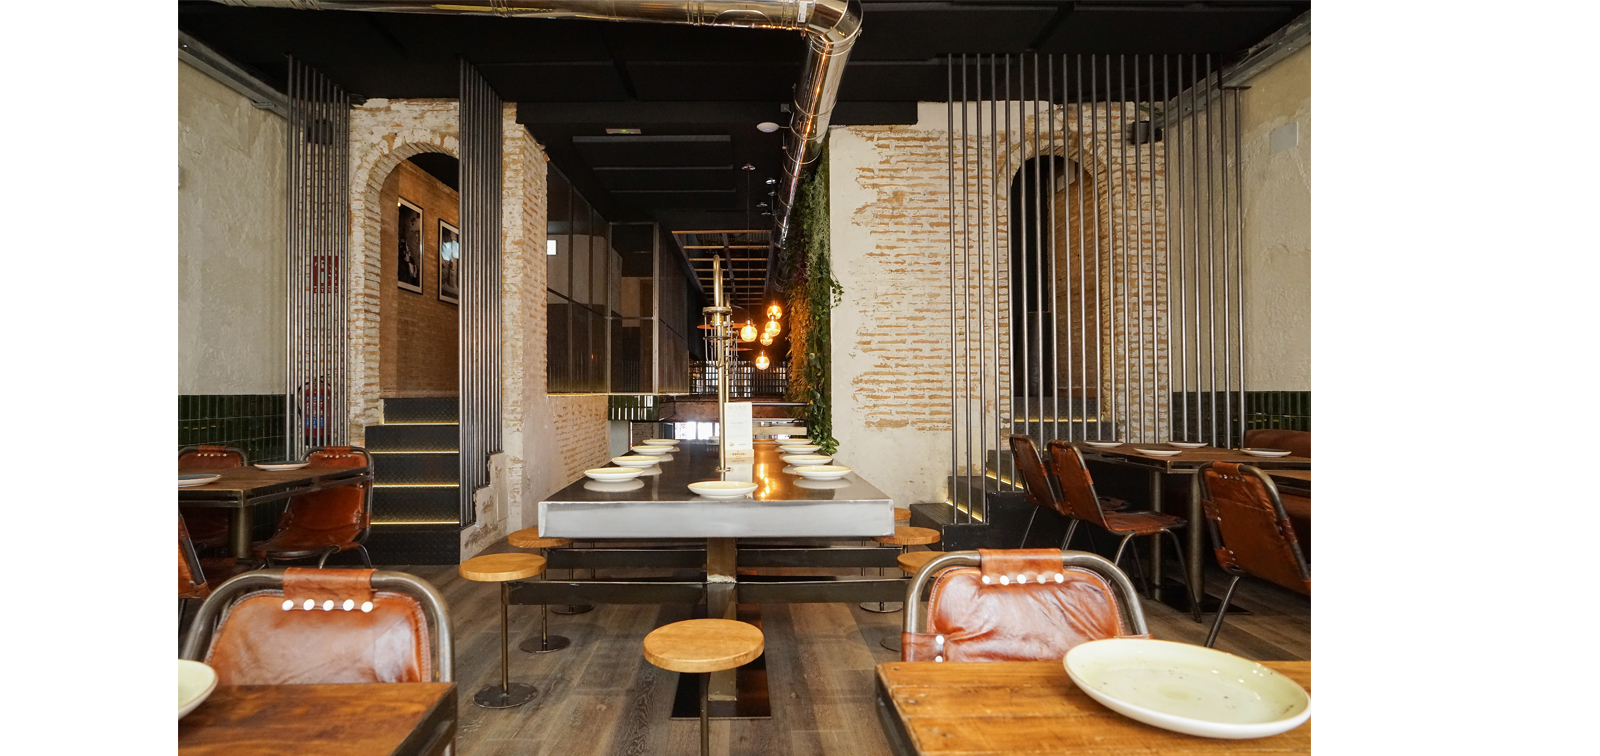 Rehabilitación de restaurante con paredes de materiales originales, ladrillo e instalaciones vistas